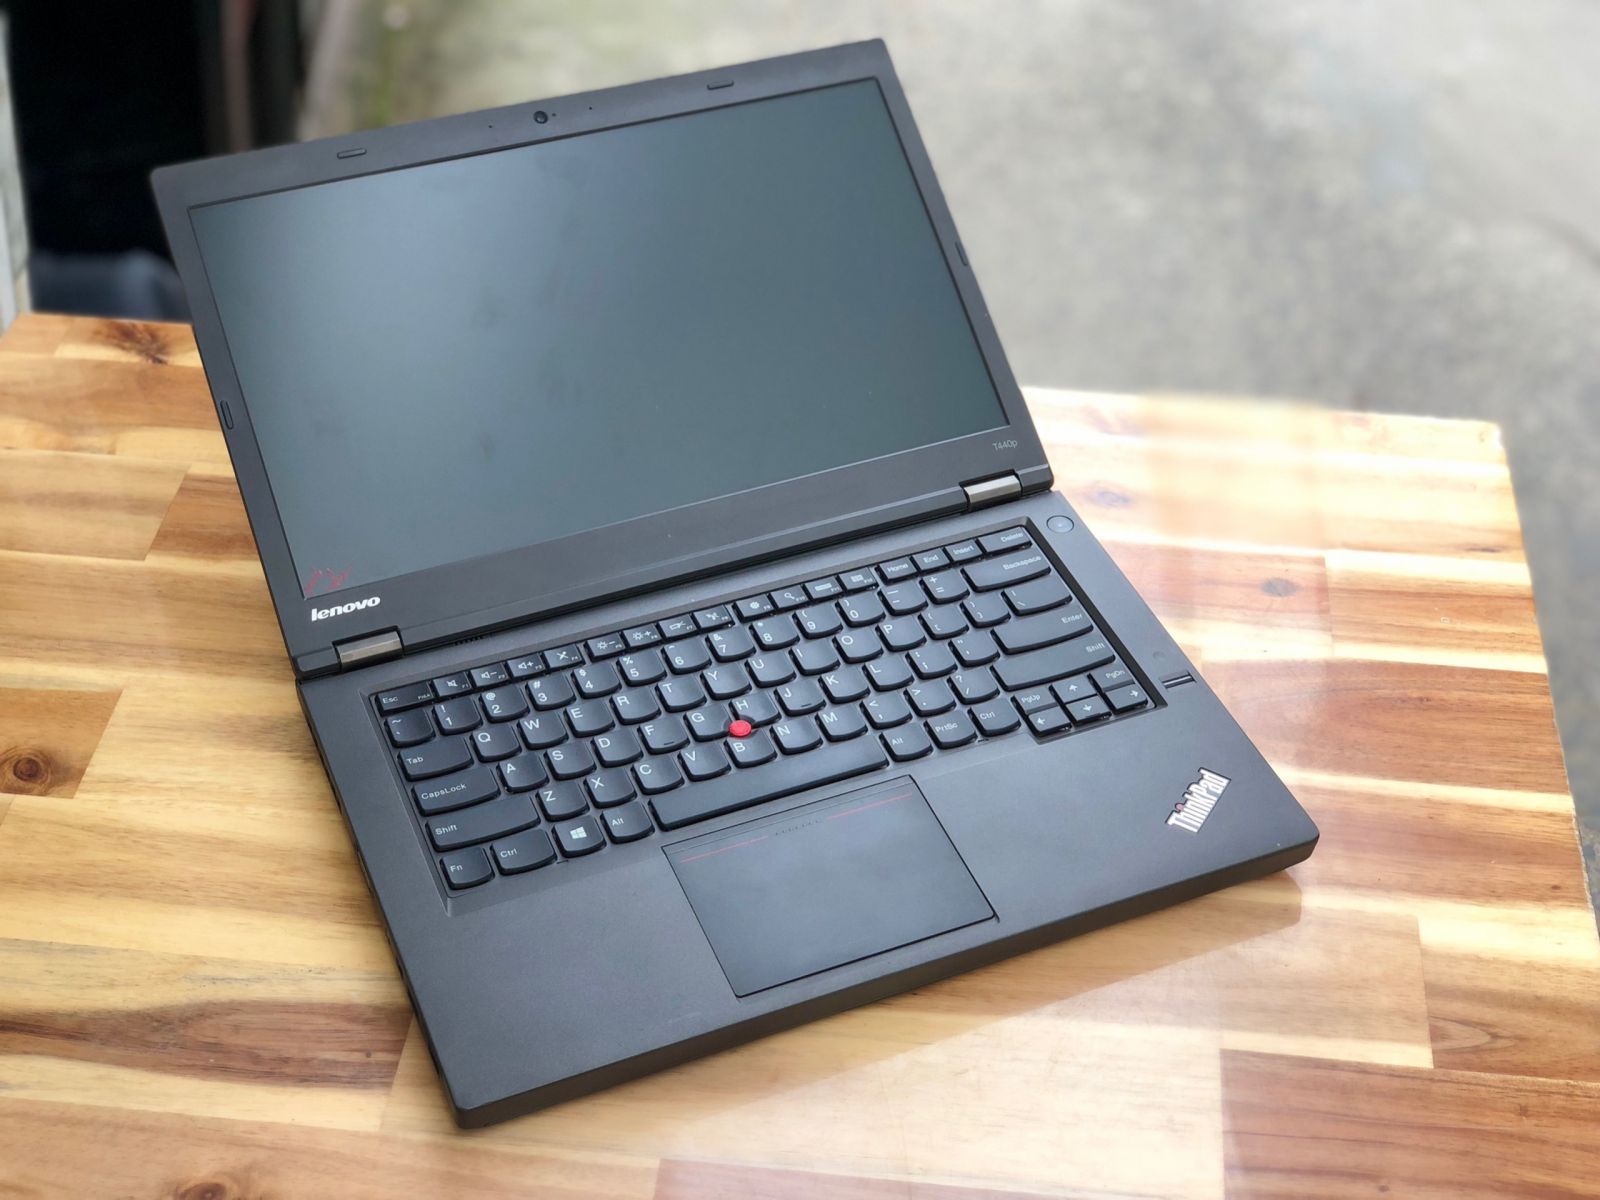 Laptop Lenovo Thinkpad T440P, i7 4600M 8G SSD128 Vga 2G Đèn Phím Finger Đẹp Keng Zin 100% Giá rẻ4